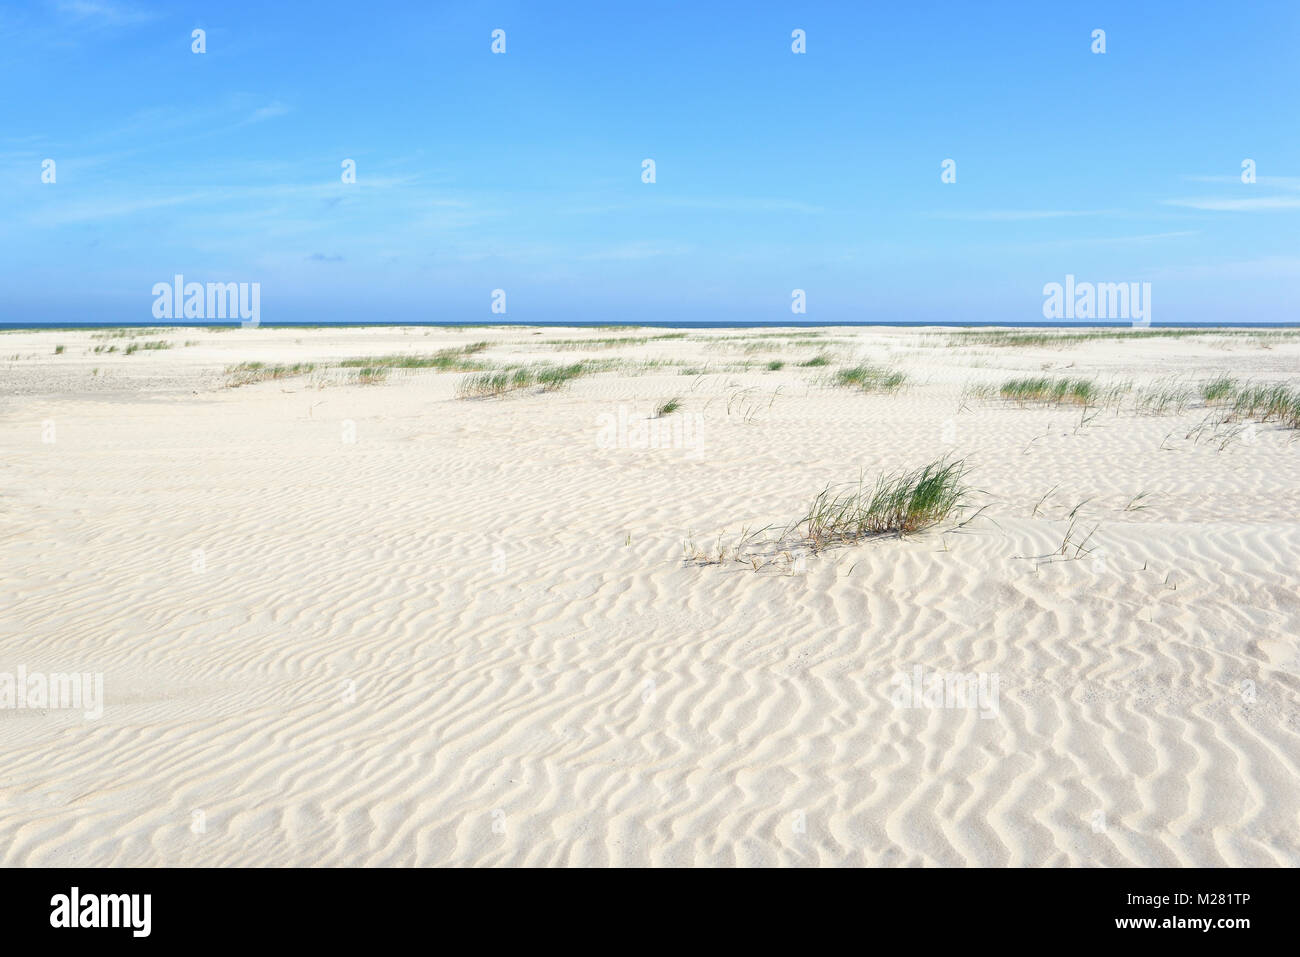 Avec un paysage de dunes de sable blanc dans la structure en forme de vague, ondulation, Norderney, îles de la Frise orientale, mer du Nord, Basse-Saxe, Allemagne Banque D'Images